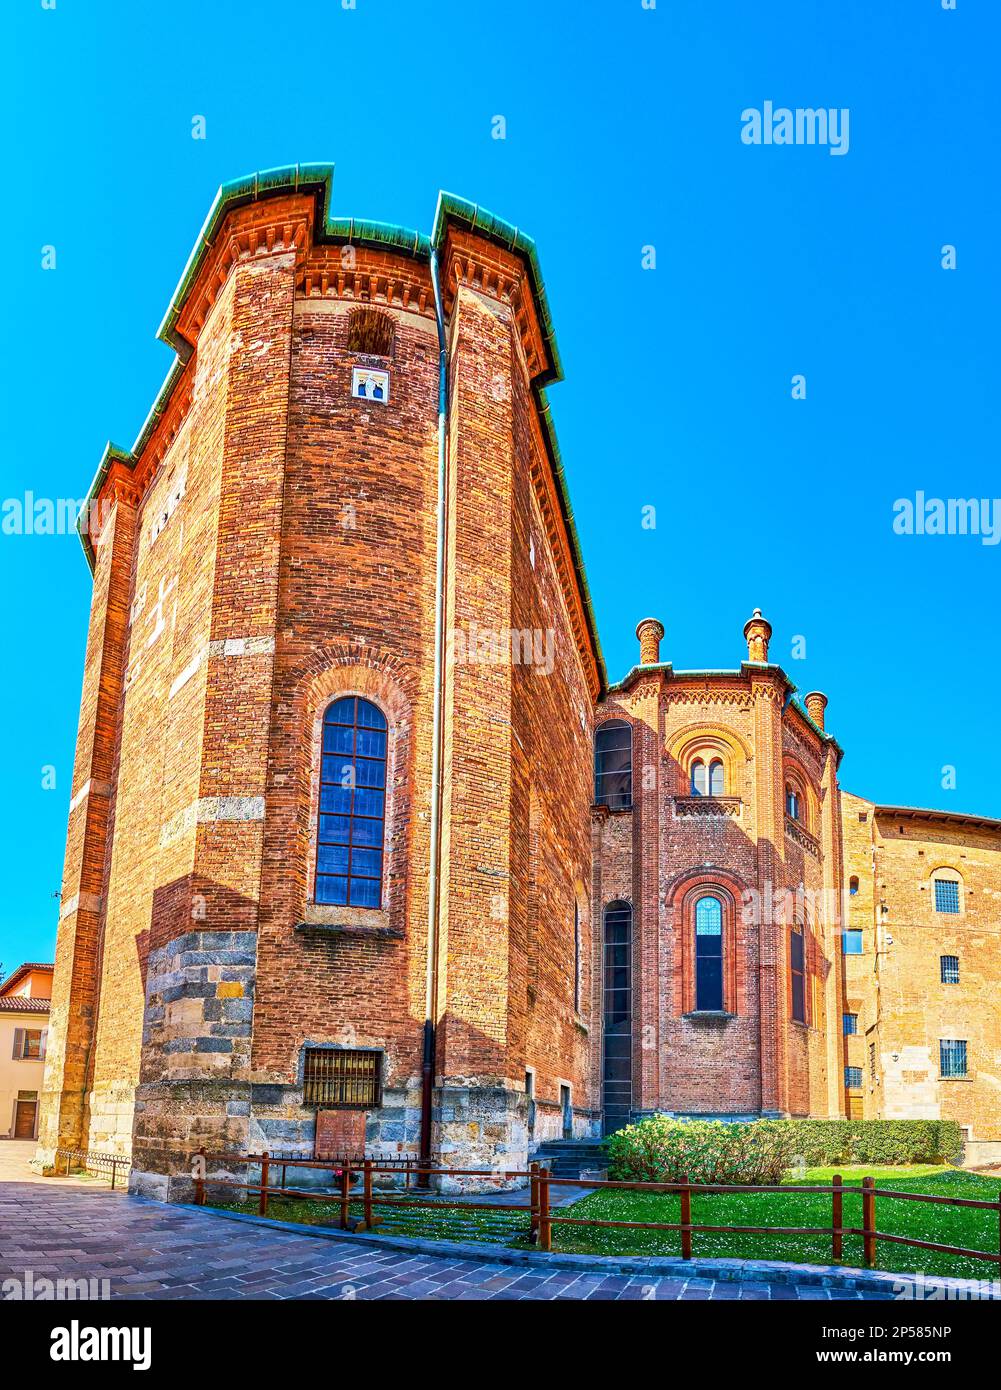 Die Außenwand der mittelalterlichen Kathedrale von Monza, Italien Stockfoto